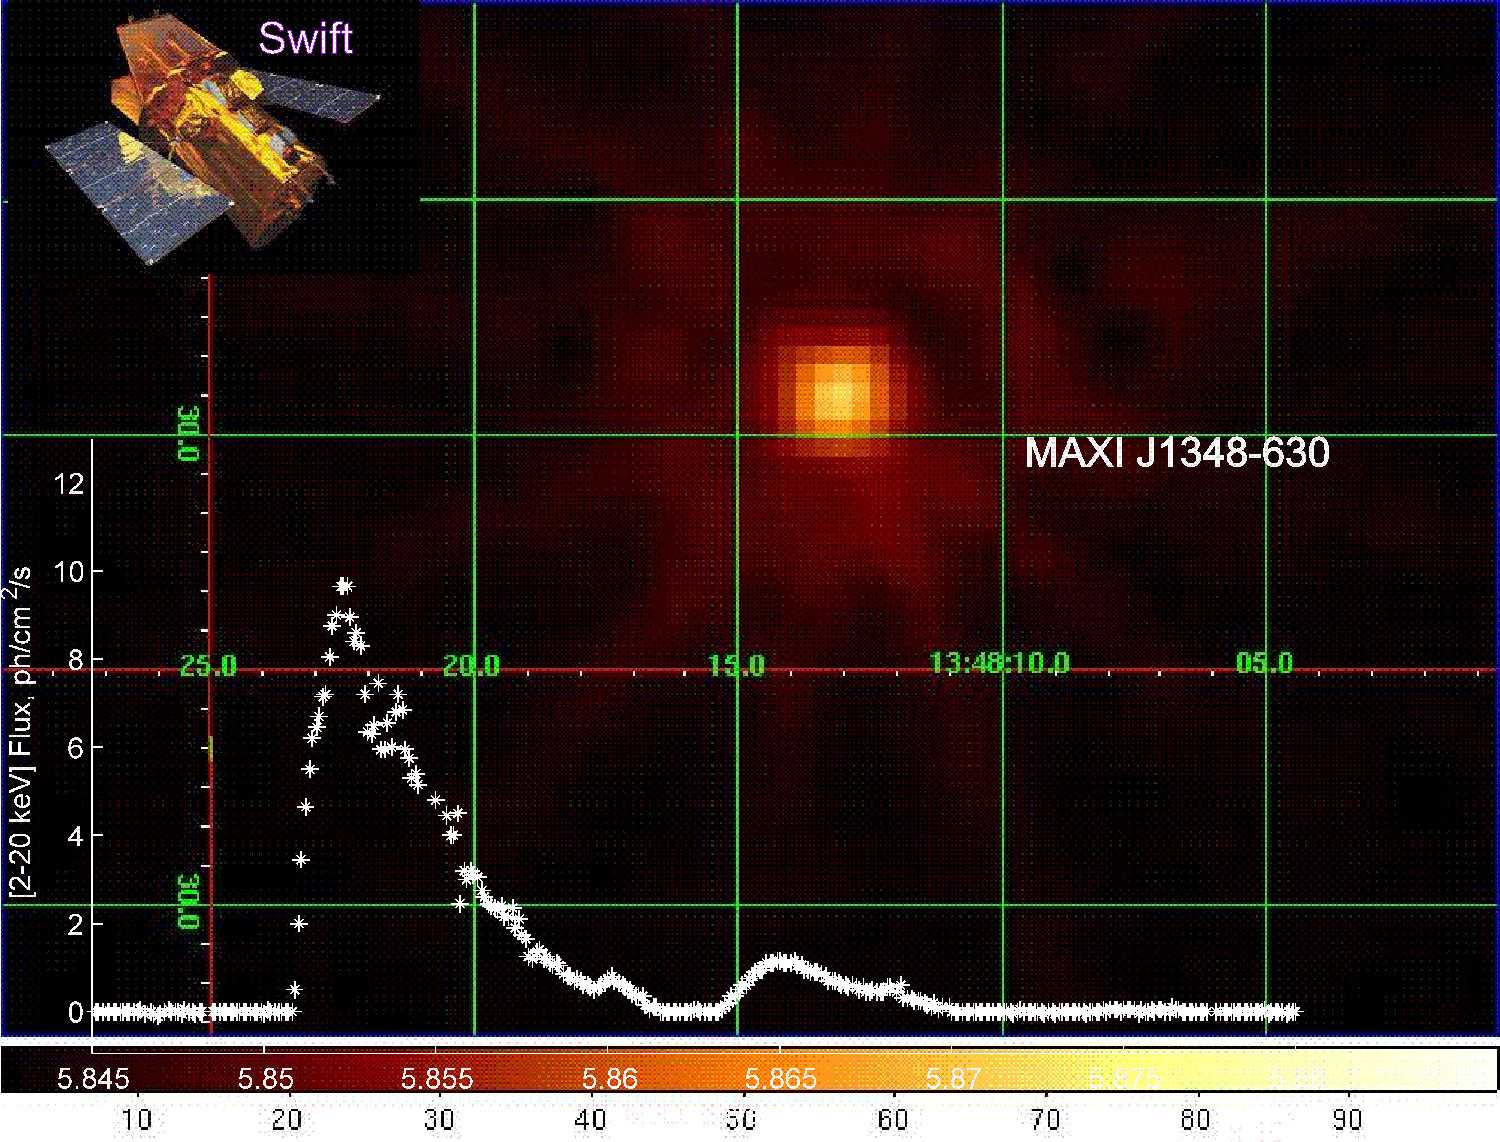 Астрофизики уточнили массу чёрной дыры MAXI J1348-630